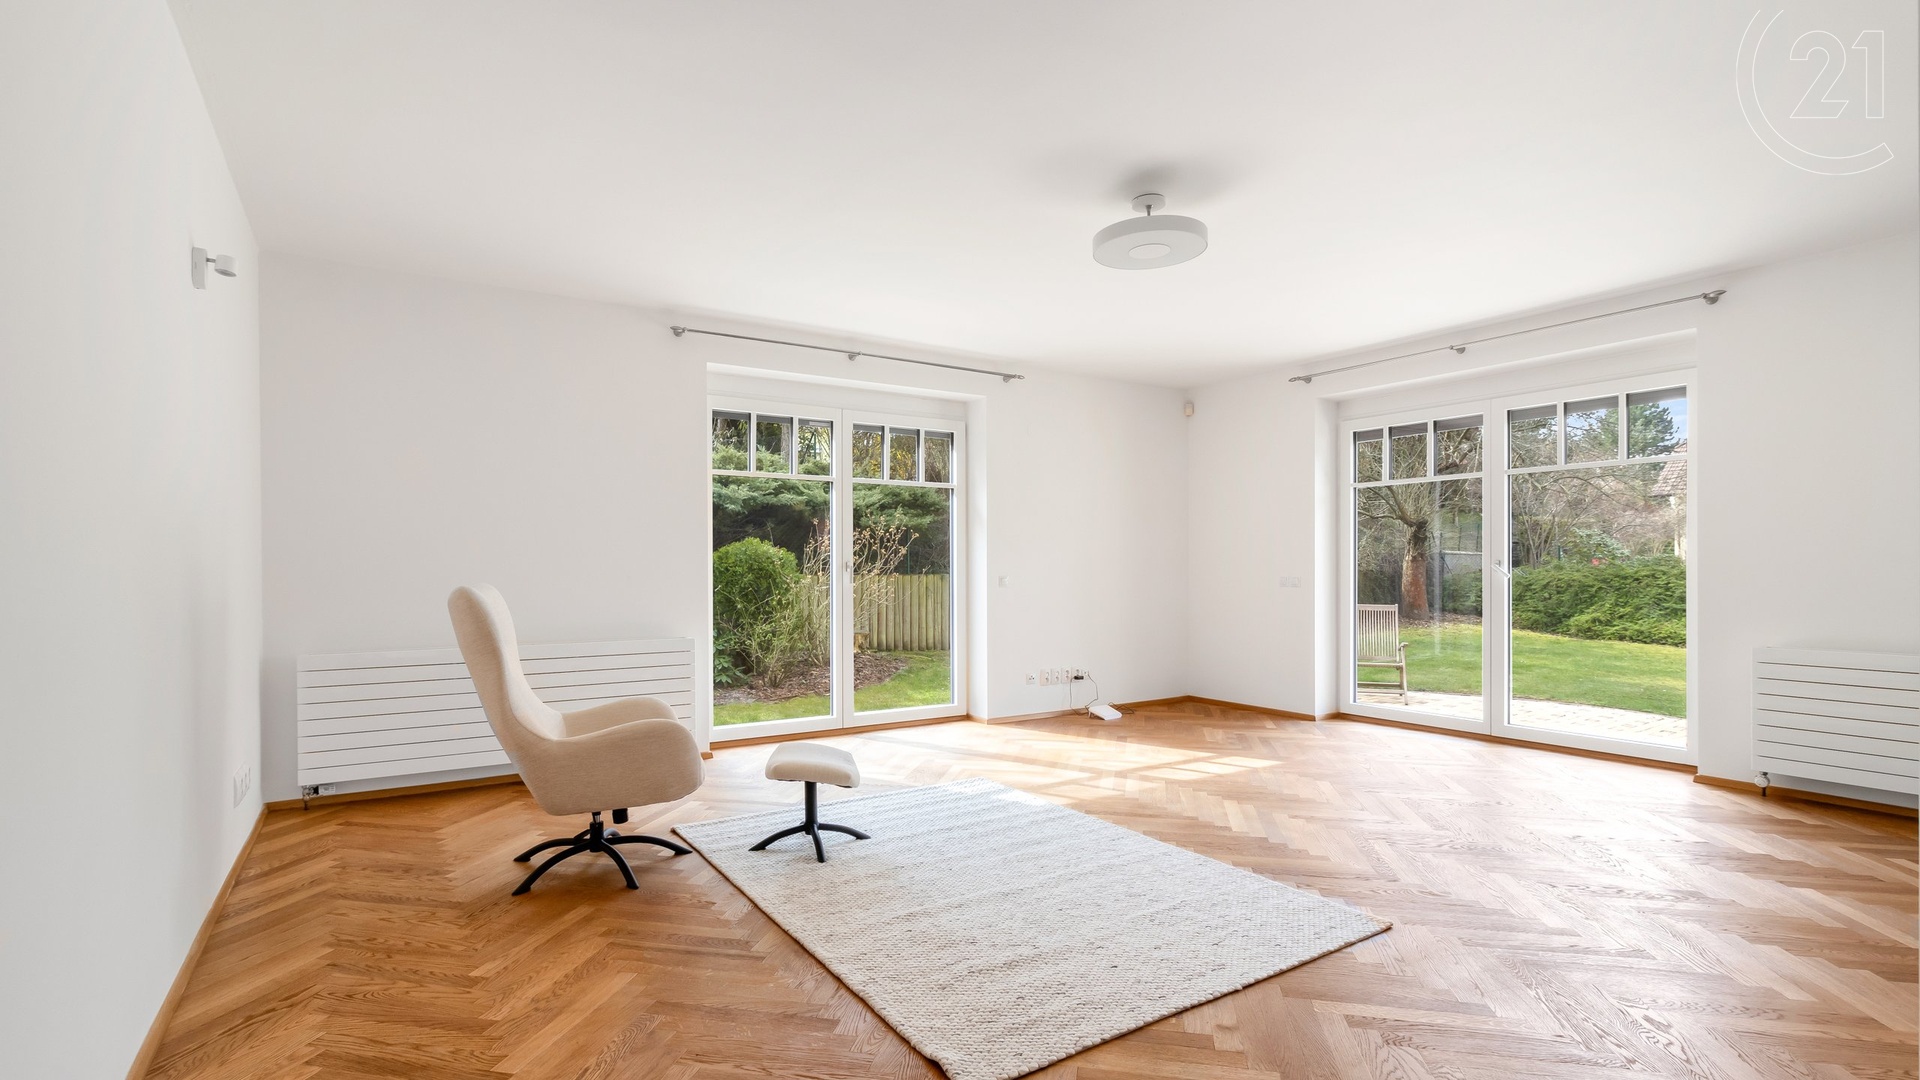 Prodej krásného rodinného domu se zahradou v  Praze - Nebušicích o užitné ploše 304 m²